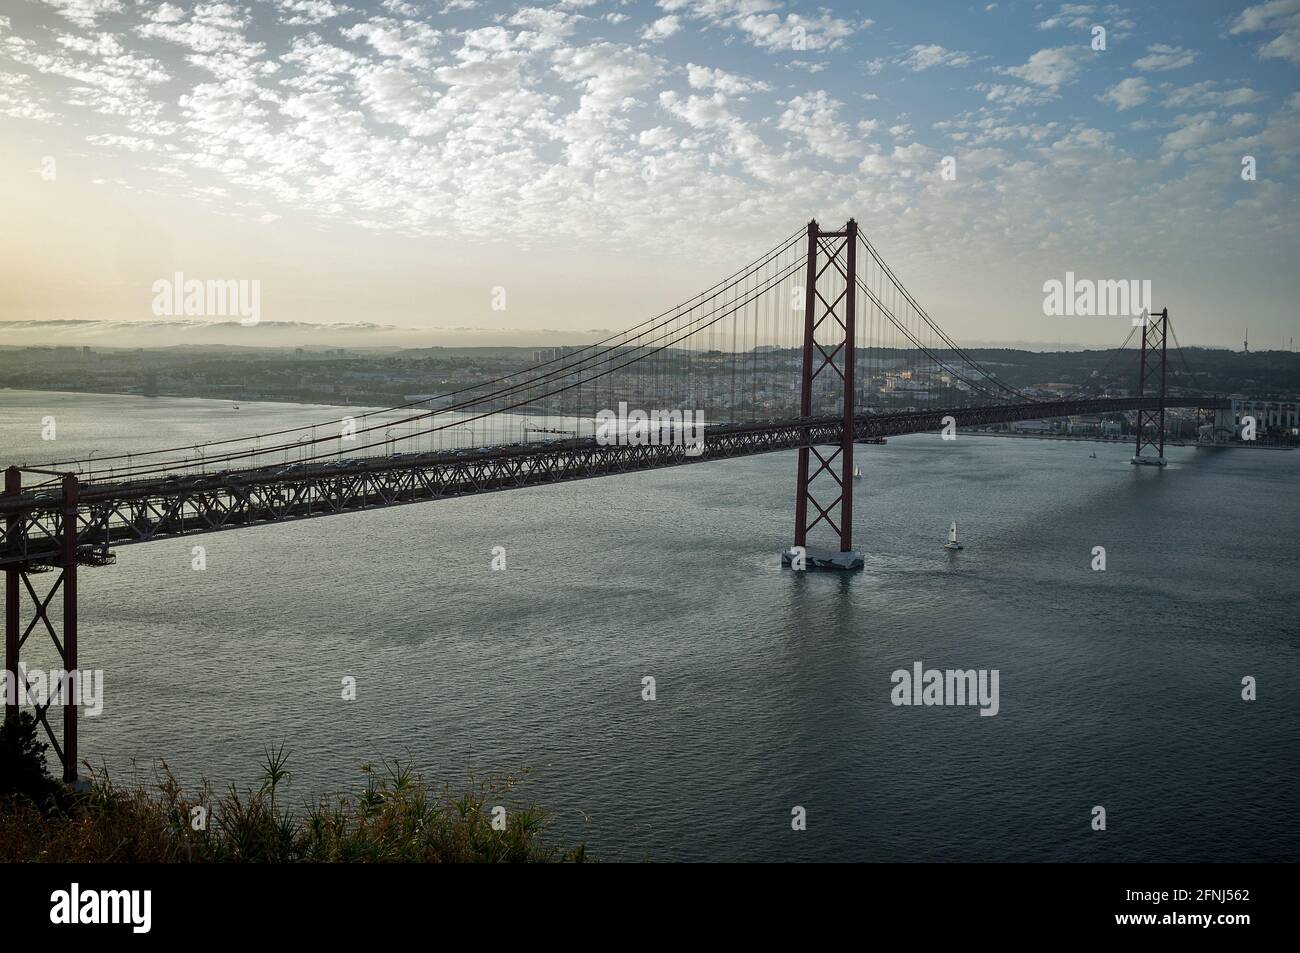 Die Ponte 25 de Abril ist ein 3,2 km langer Brückenzug in Portugal mit einer 2278 m langen Hängebrücke über den Tejo. Lissabon Banque D'Images